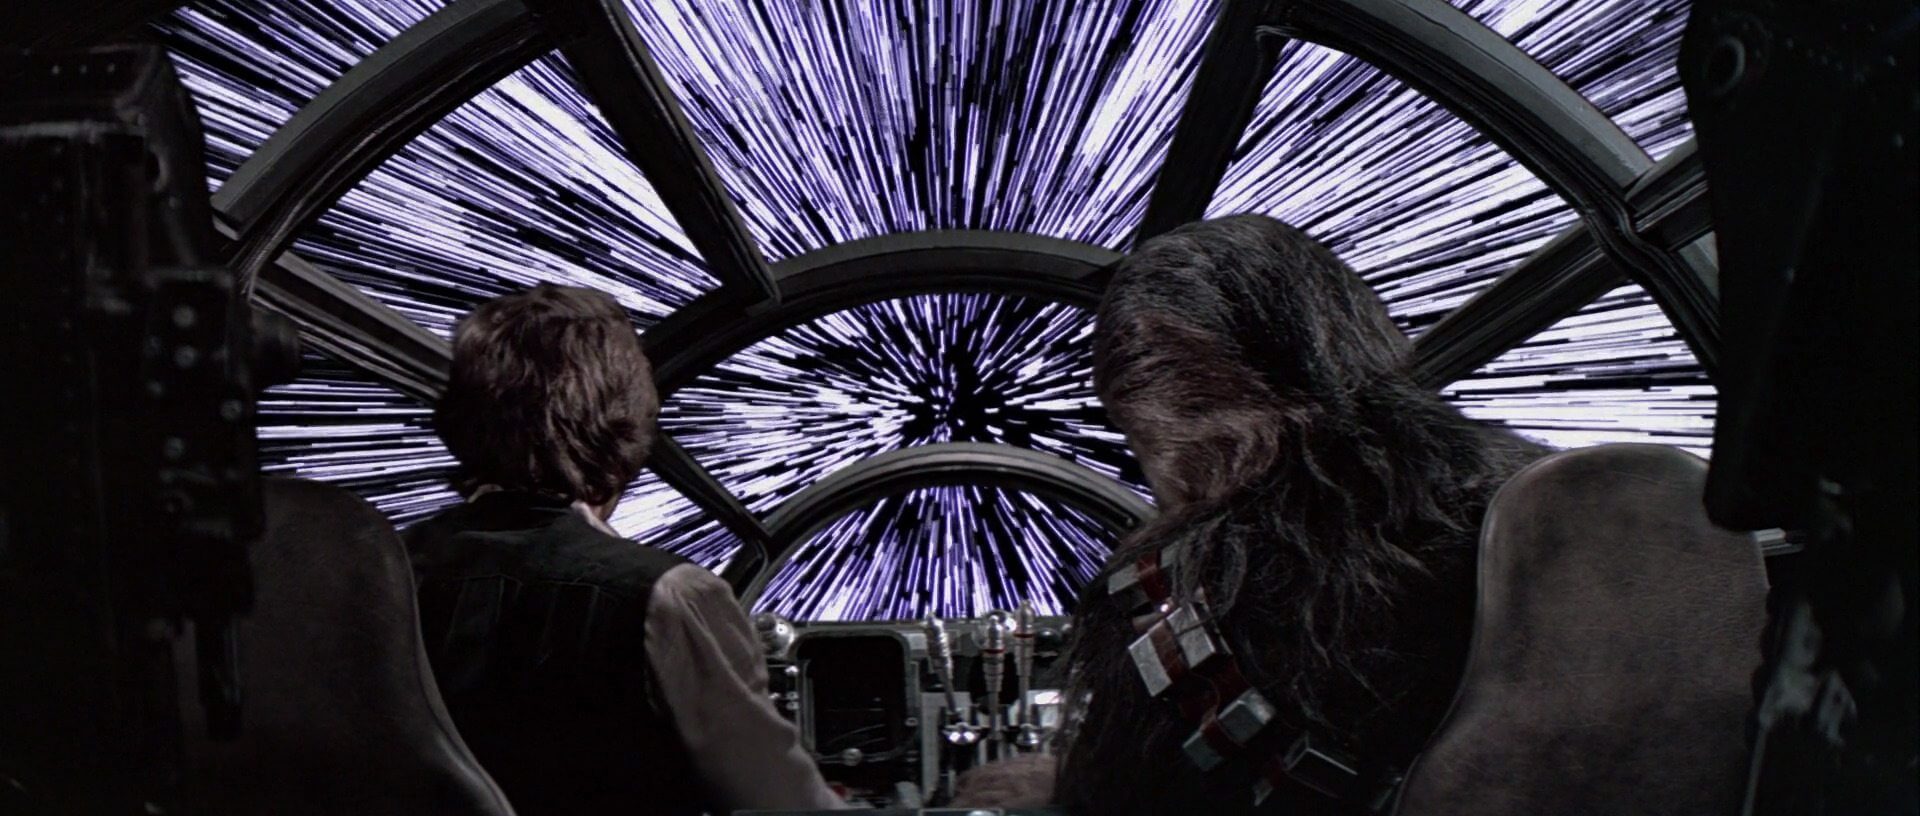 Star wars: a tecnologia dos filmes poderá existir?. Físico comenta a ciência da saga de filmes e diz se será possível viagens feitas em velocidade mais rápida que a da luz